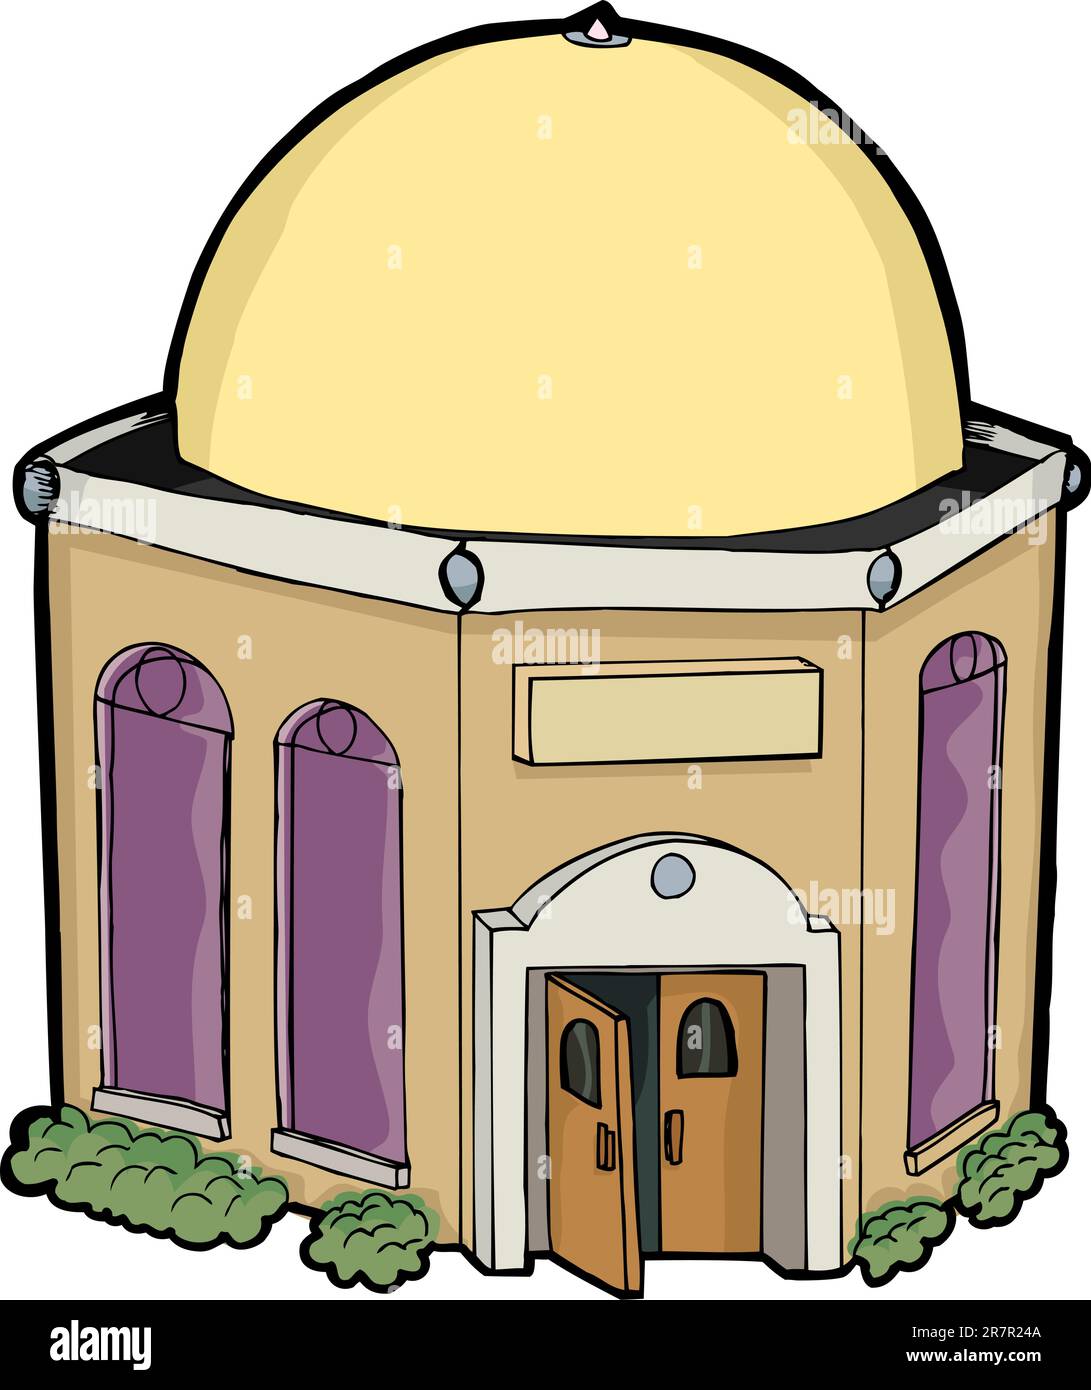 Kleine allgemeine religiöse Gebäude für jede religion Stock Vektor